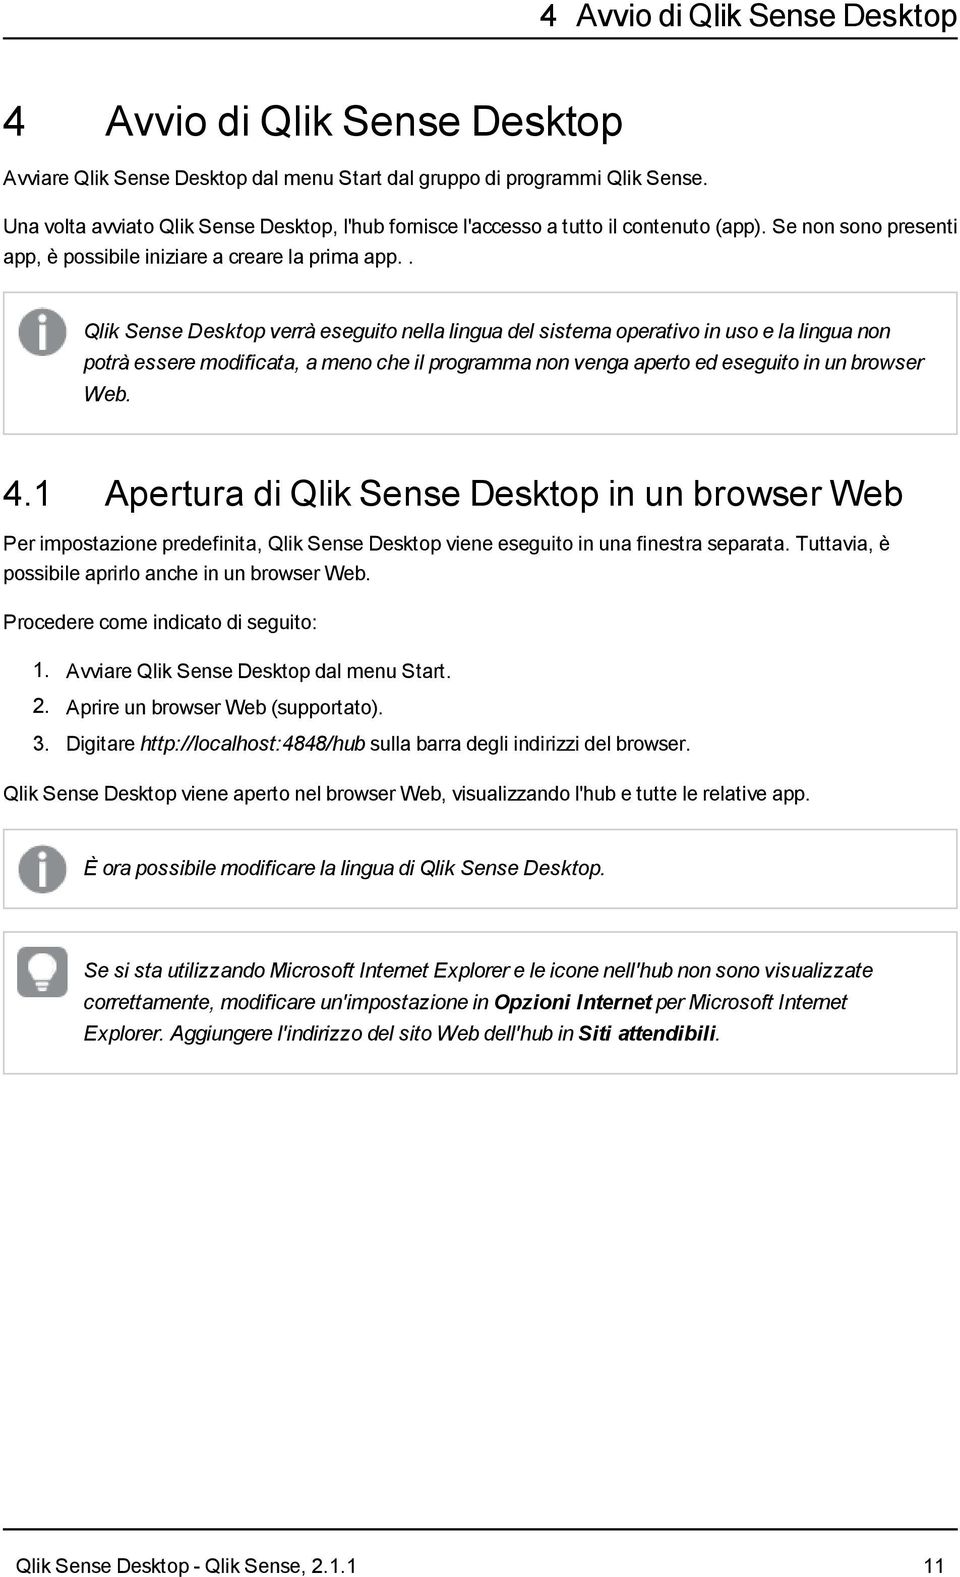 . Qlik Sense Desktop verrà eseguito nella lingua del sistema operativo in uso e la lingua non potrà essere modificata, a meno che il programma non venga aperto ed eseguito in un browser Web. 4.